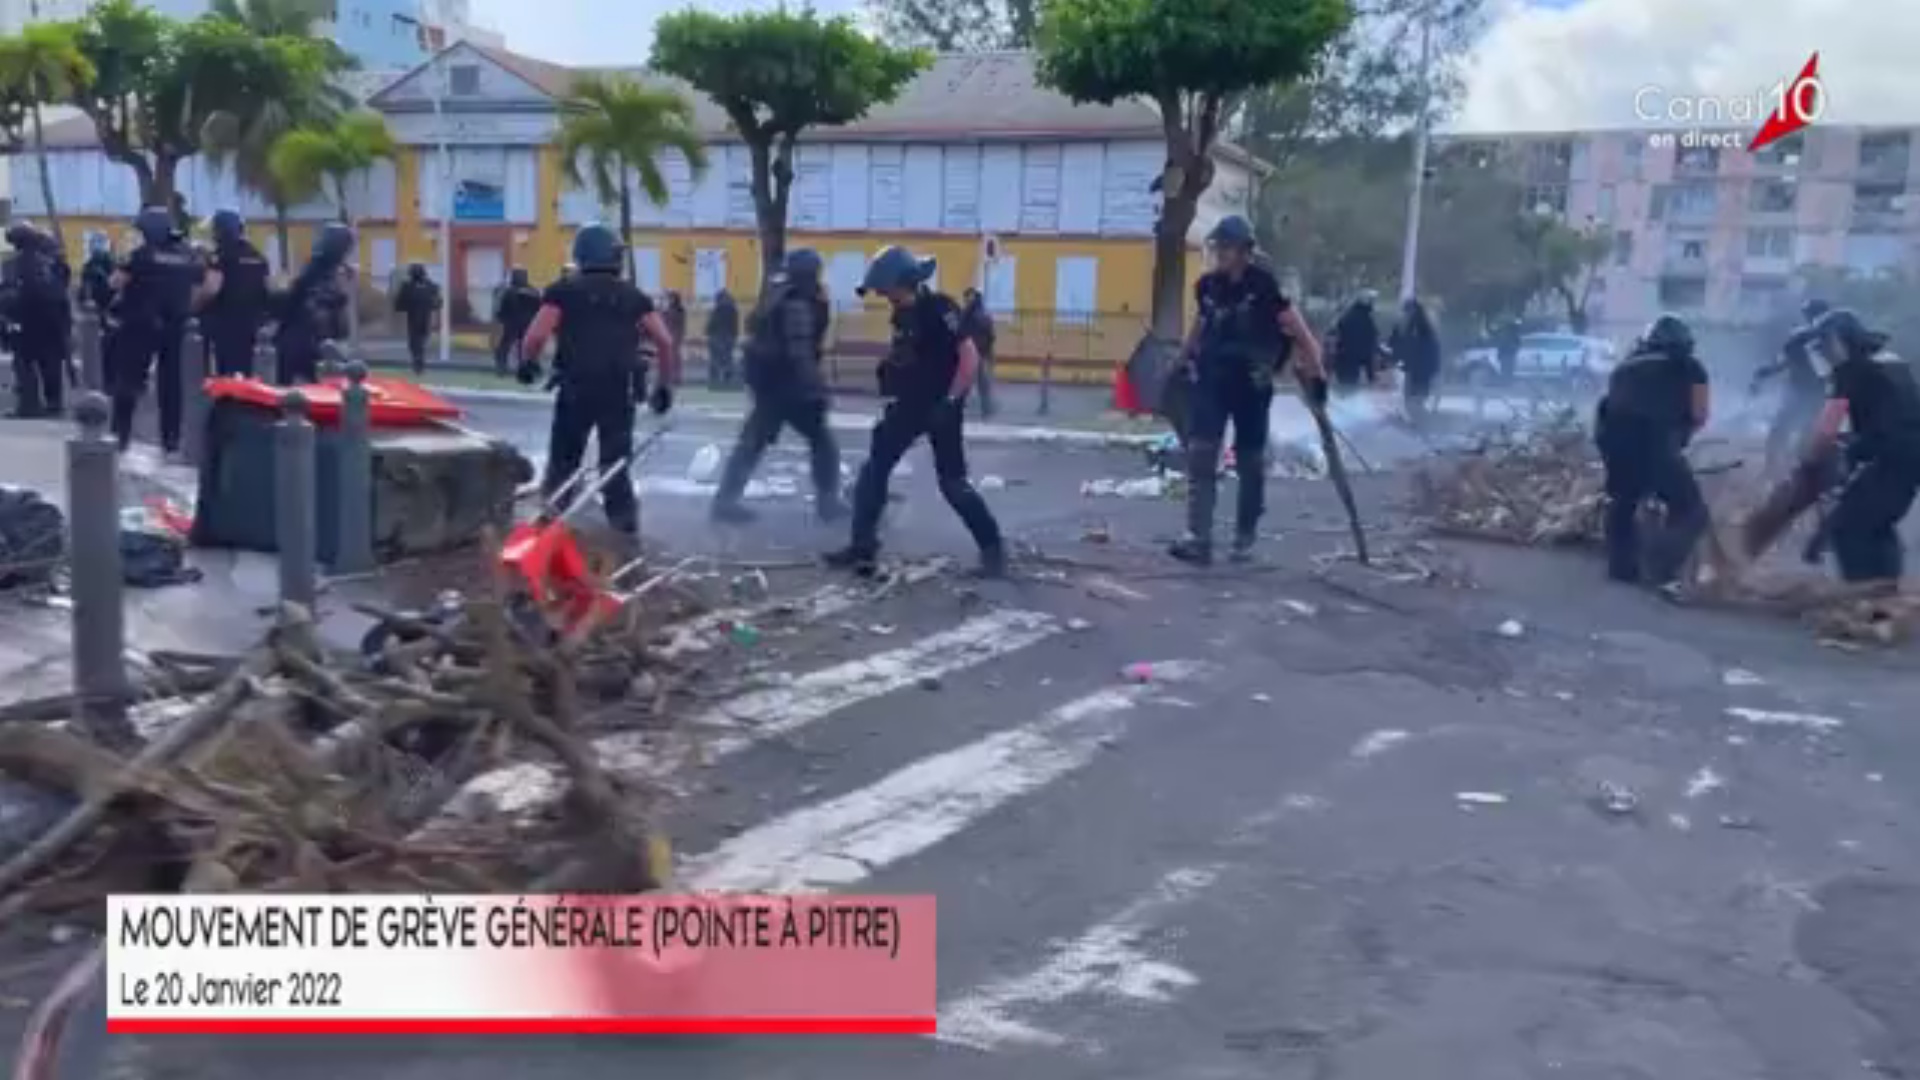 Guadeloupe. Grève générale. Manifestations à Pointe à pitre. La police demande d éviter le secteur